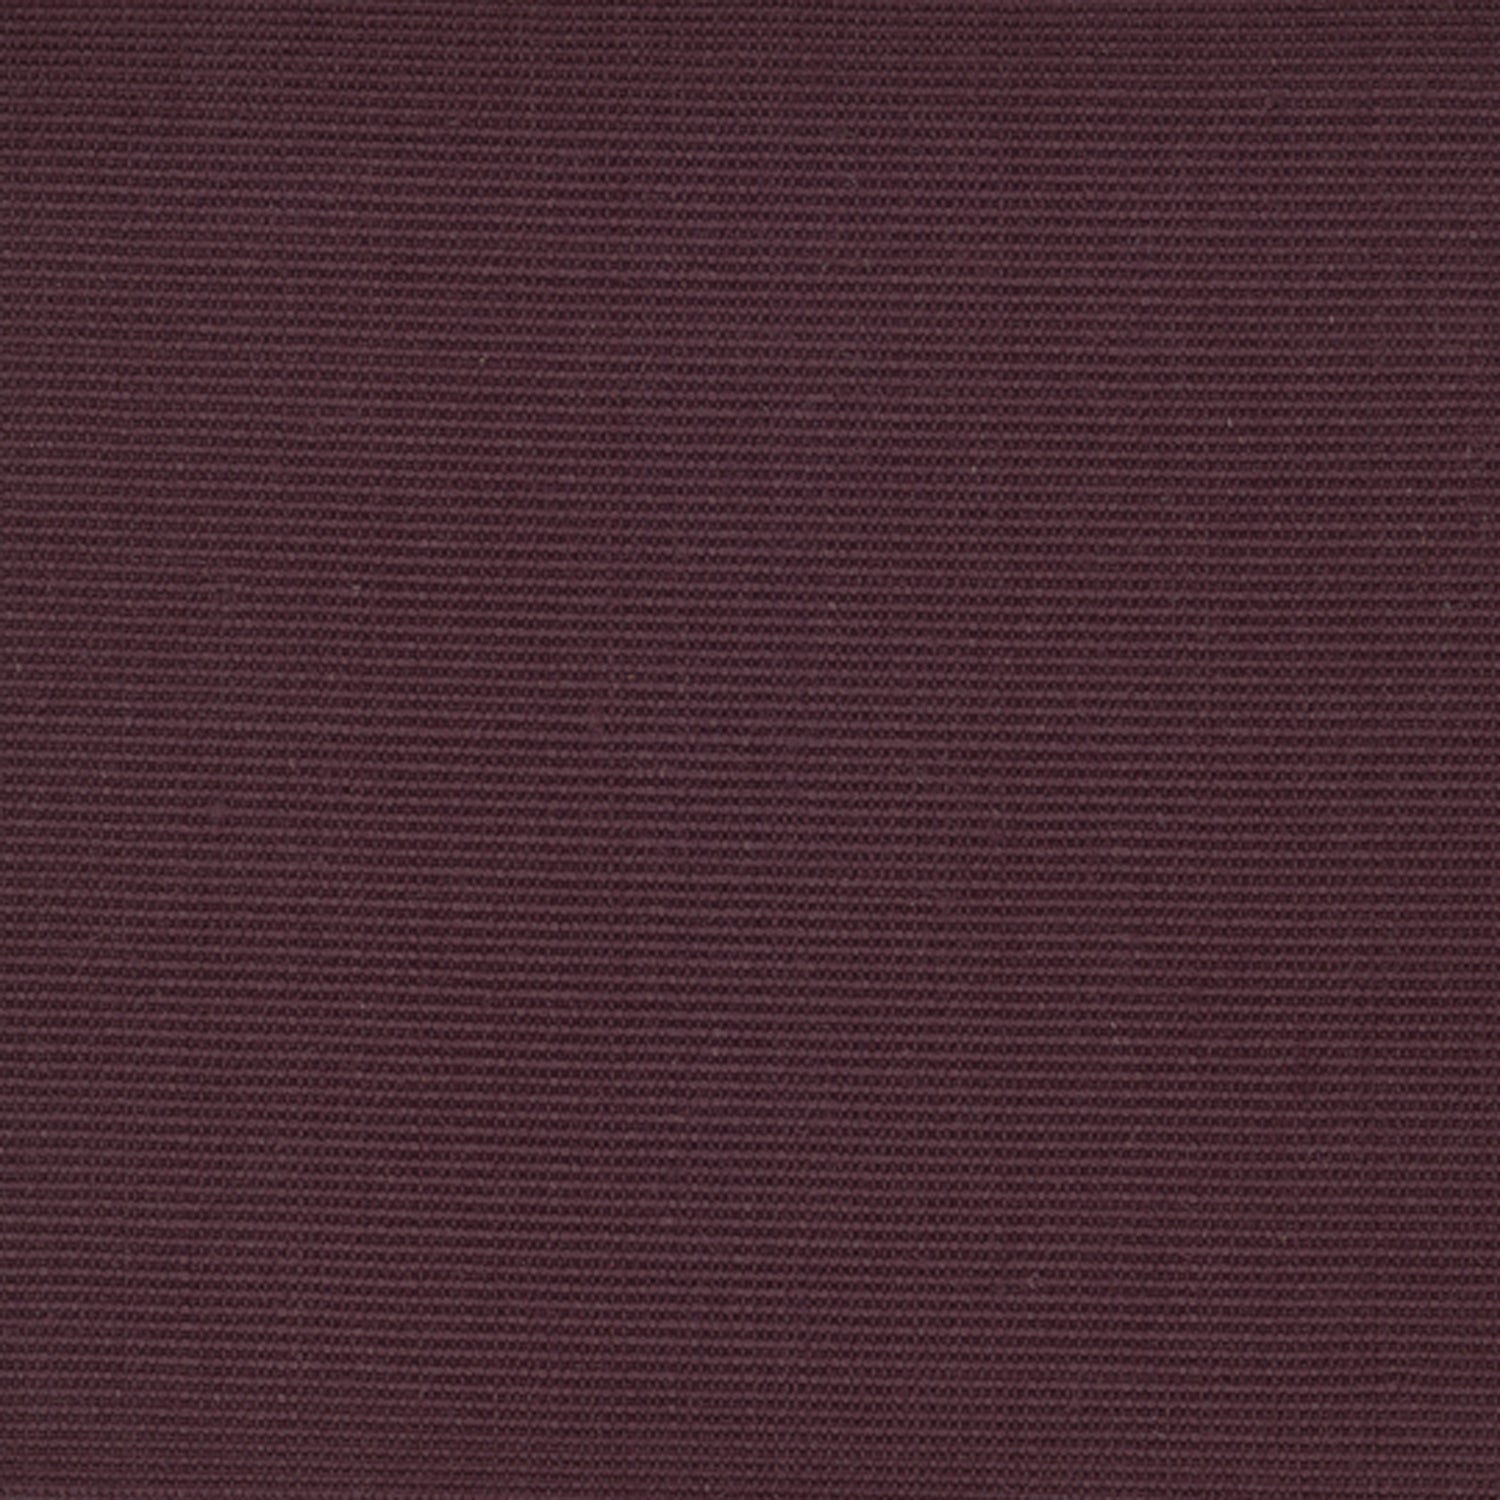 Sisal broadloom carpet swatch in a ribbed weave in "Darkroom" maroon.